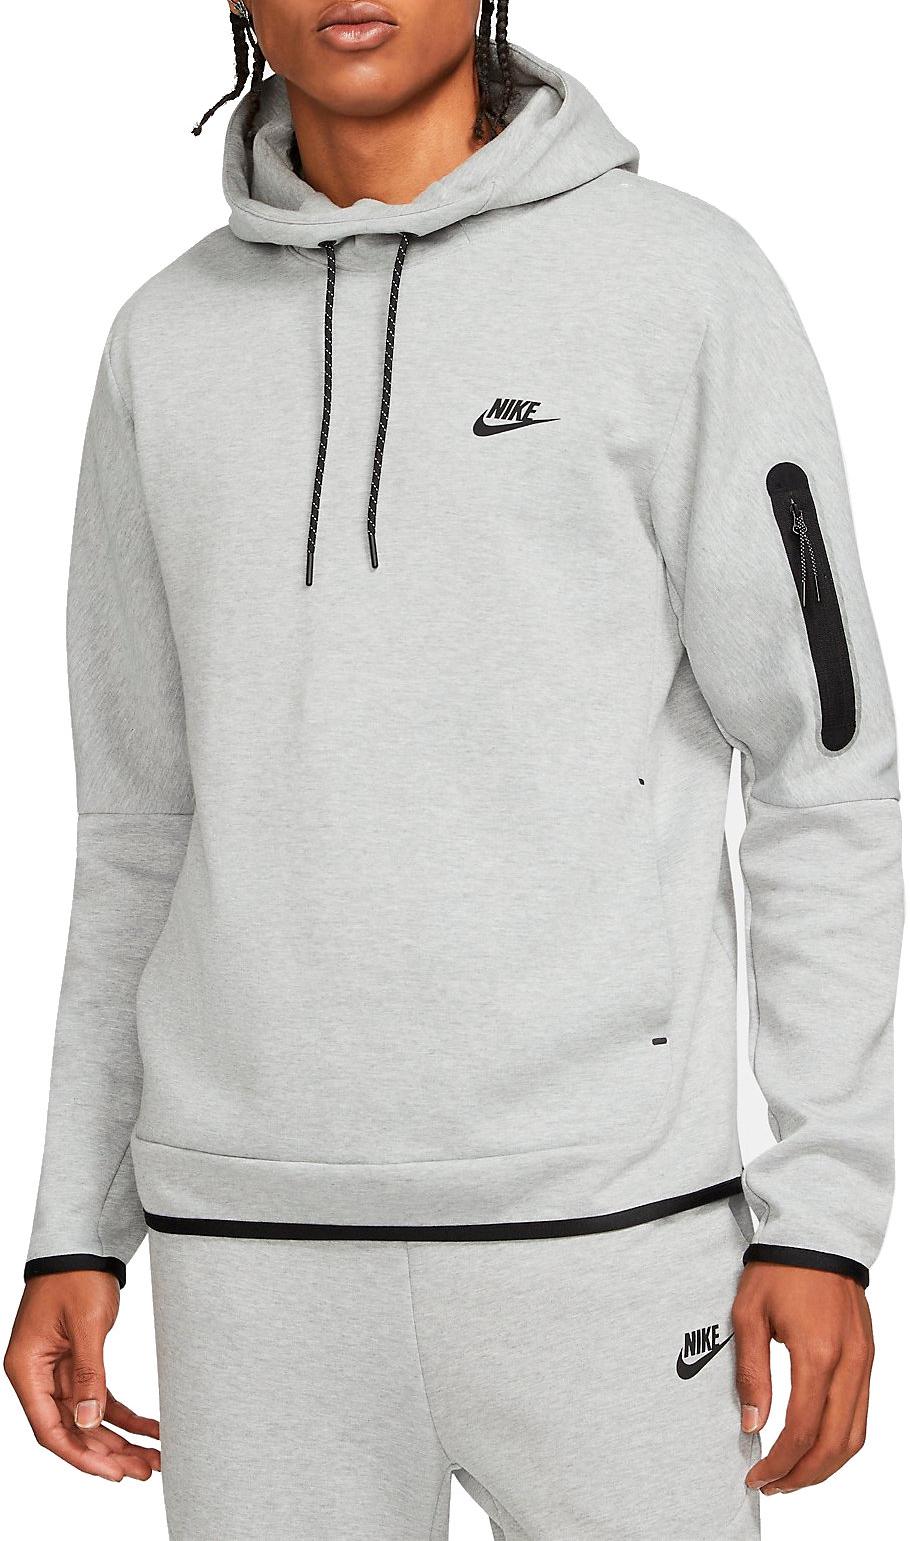 Hooded sweatshirt Nike Sportswear Tech Fleece Men s Pullover Hoodie 